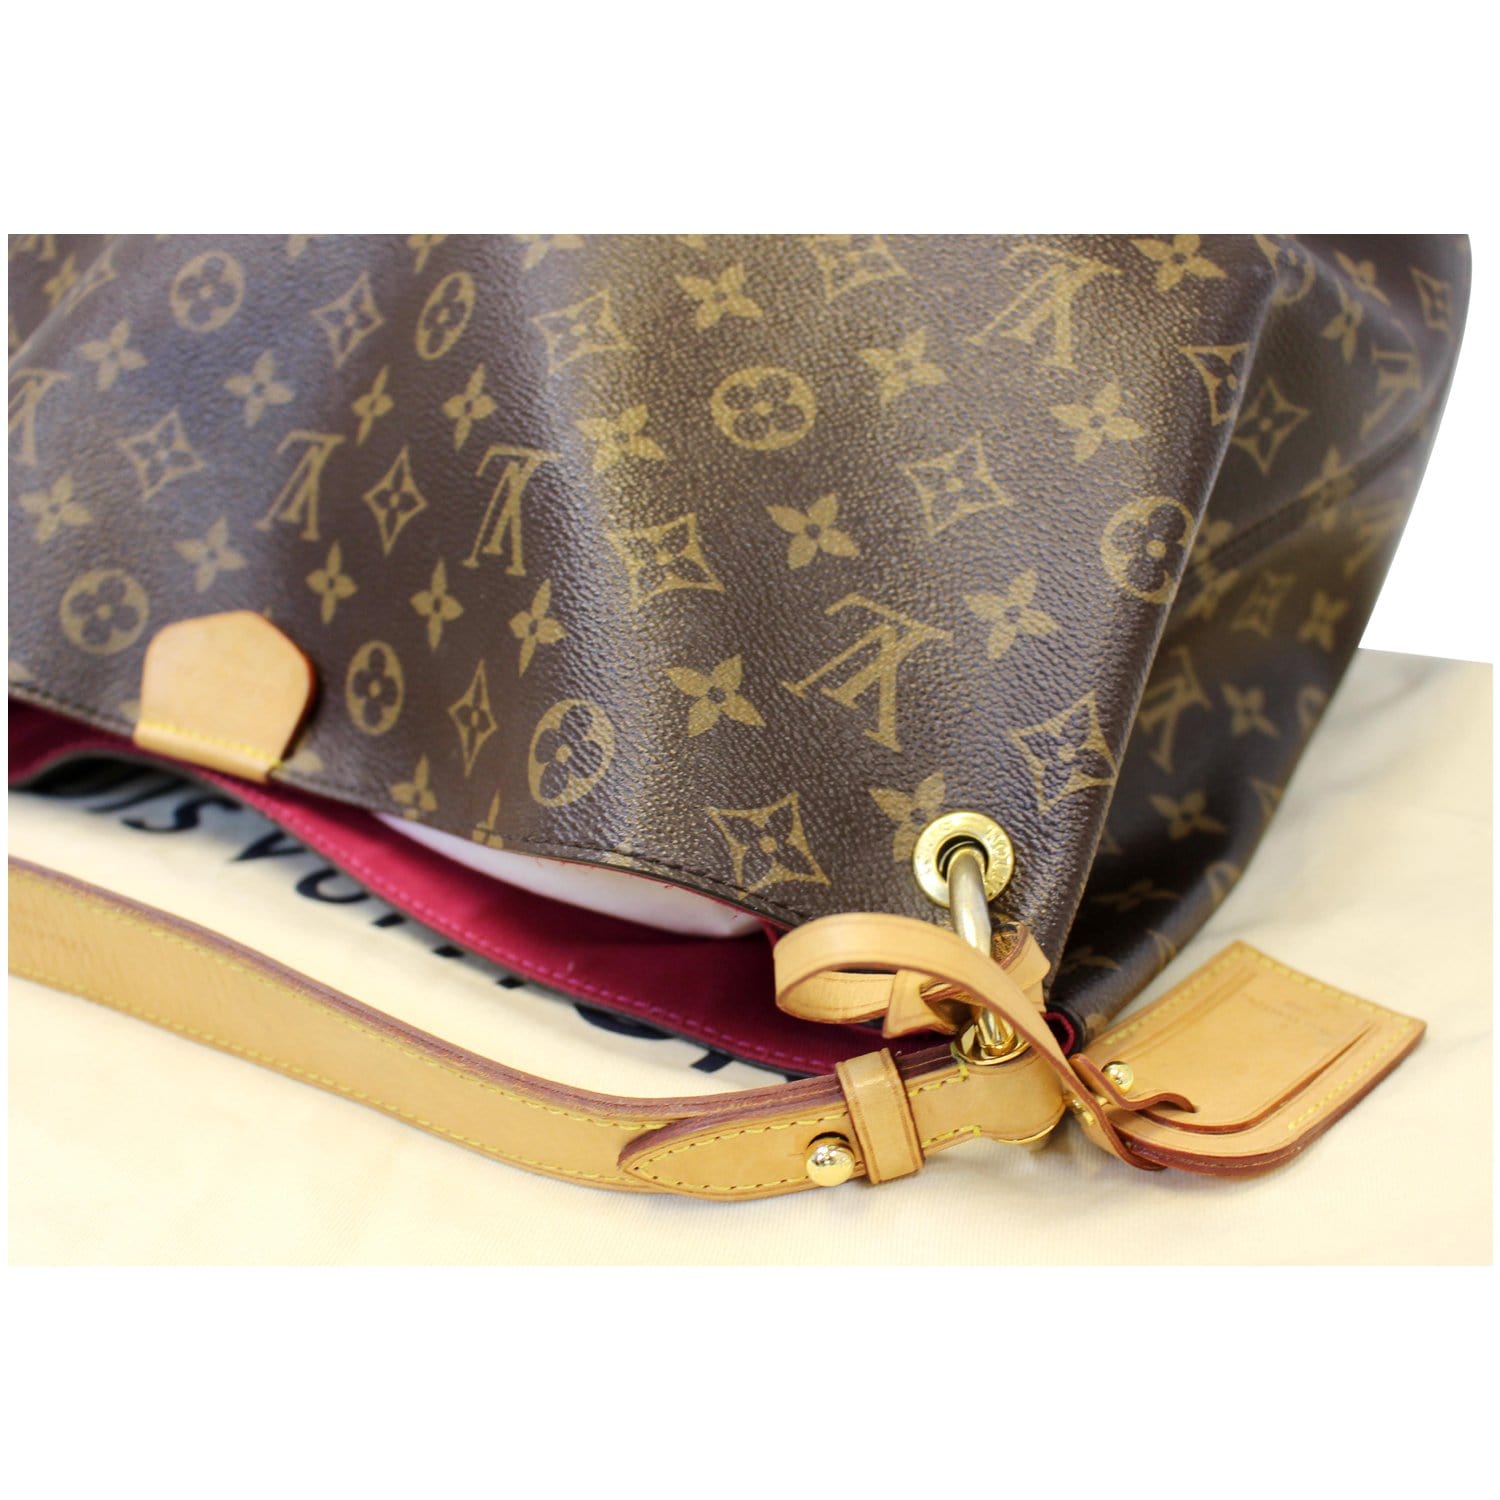 Louis Vuitton Graceful MM Monogram Canvas Shoulder Bag